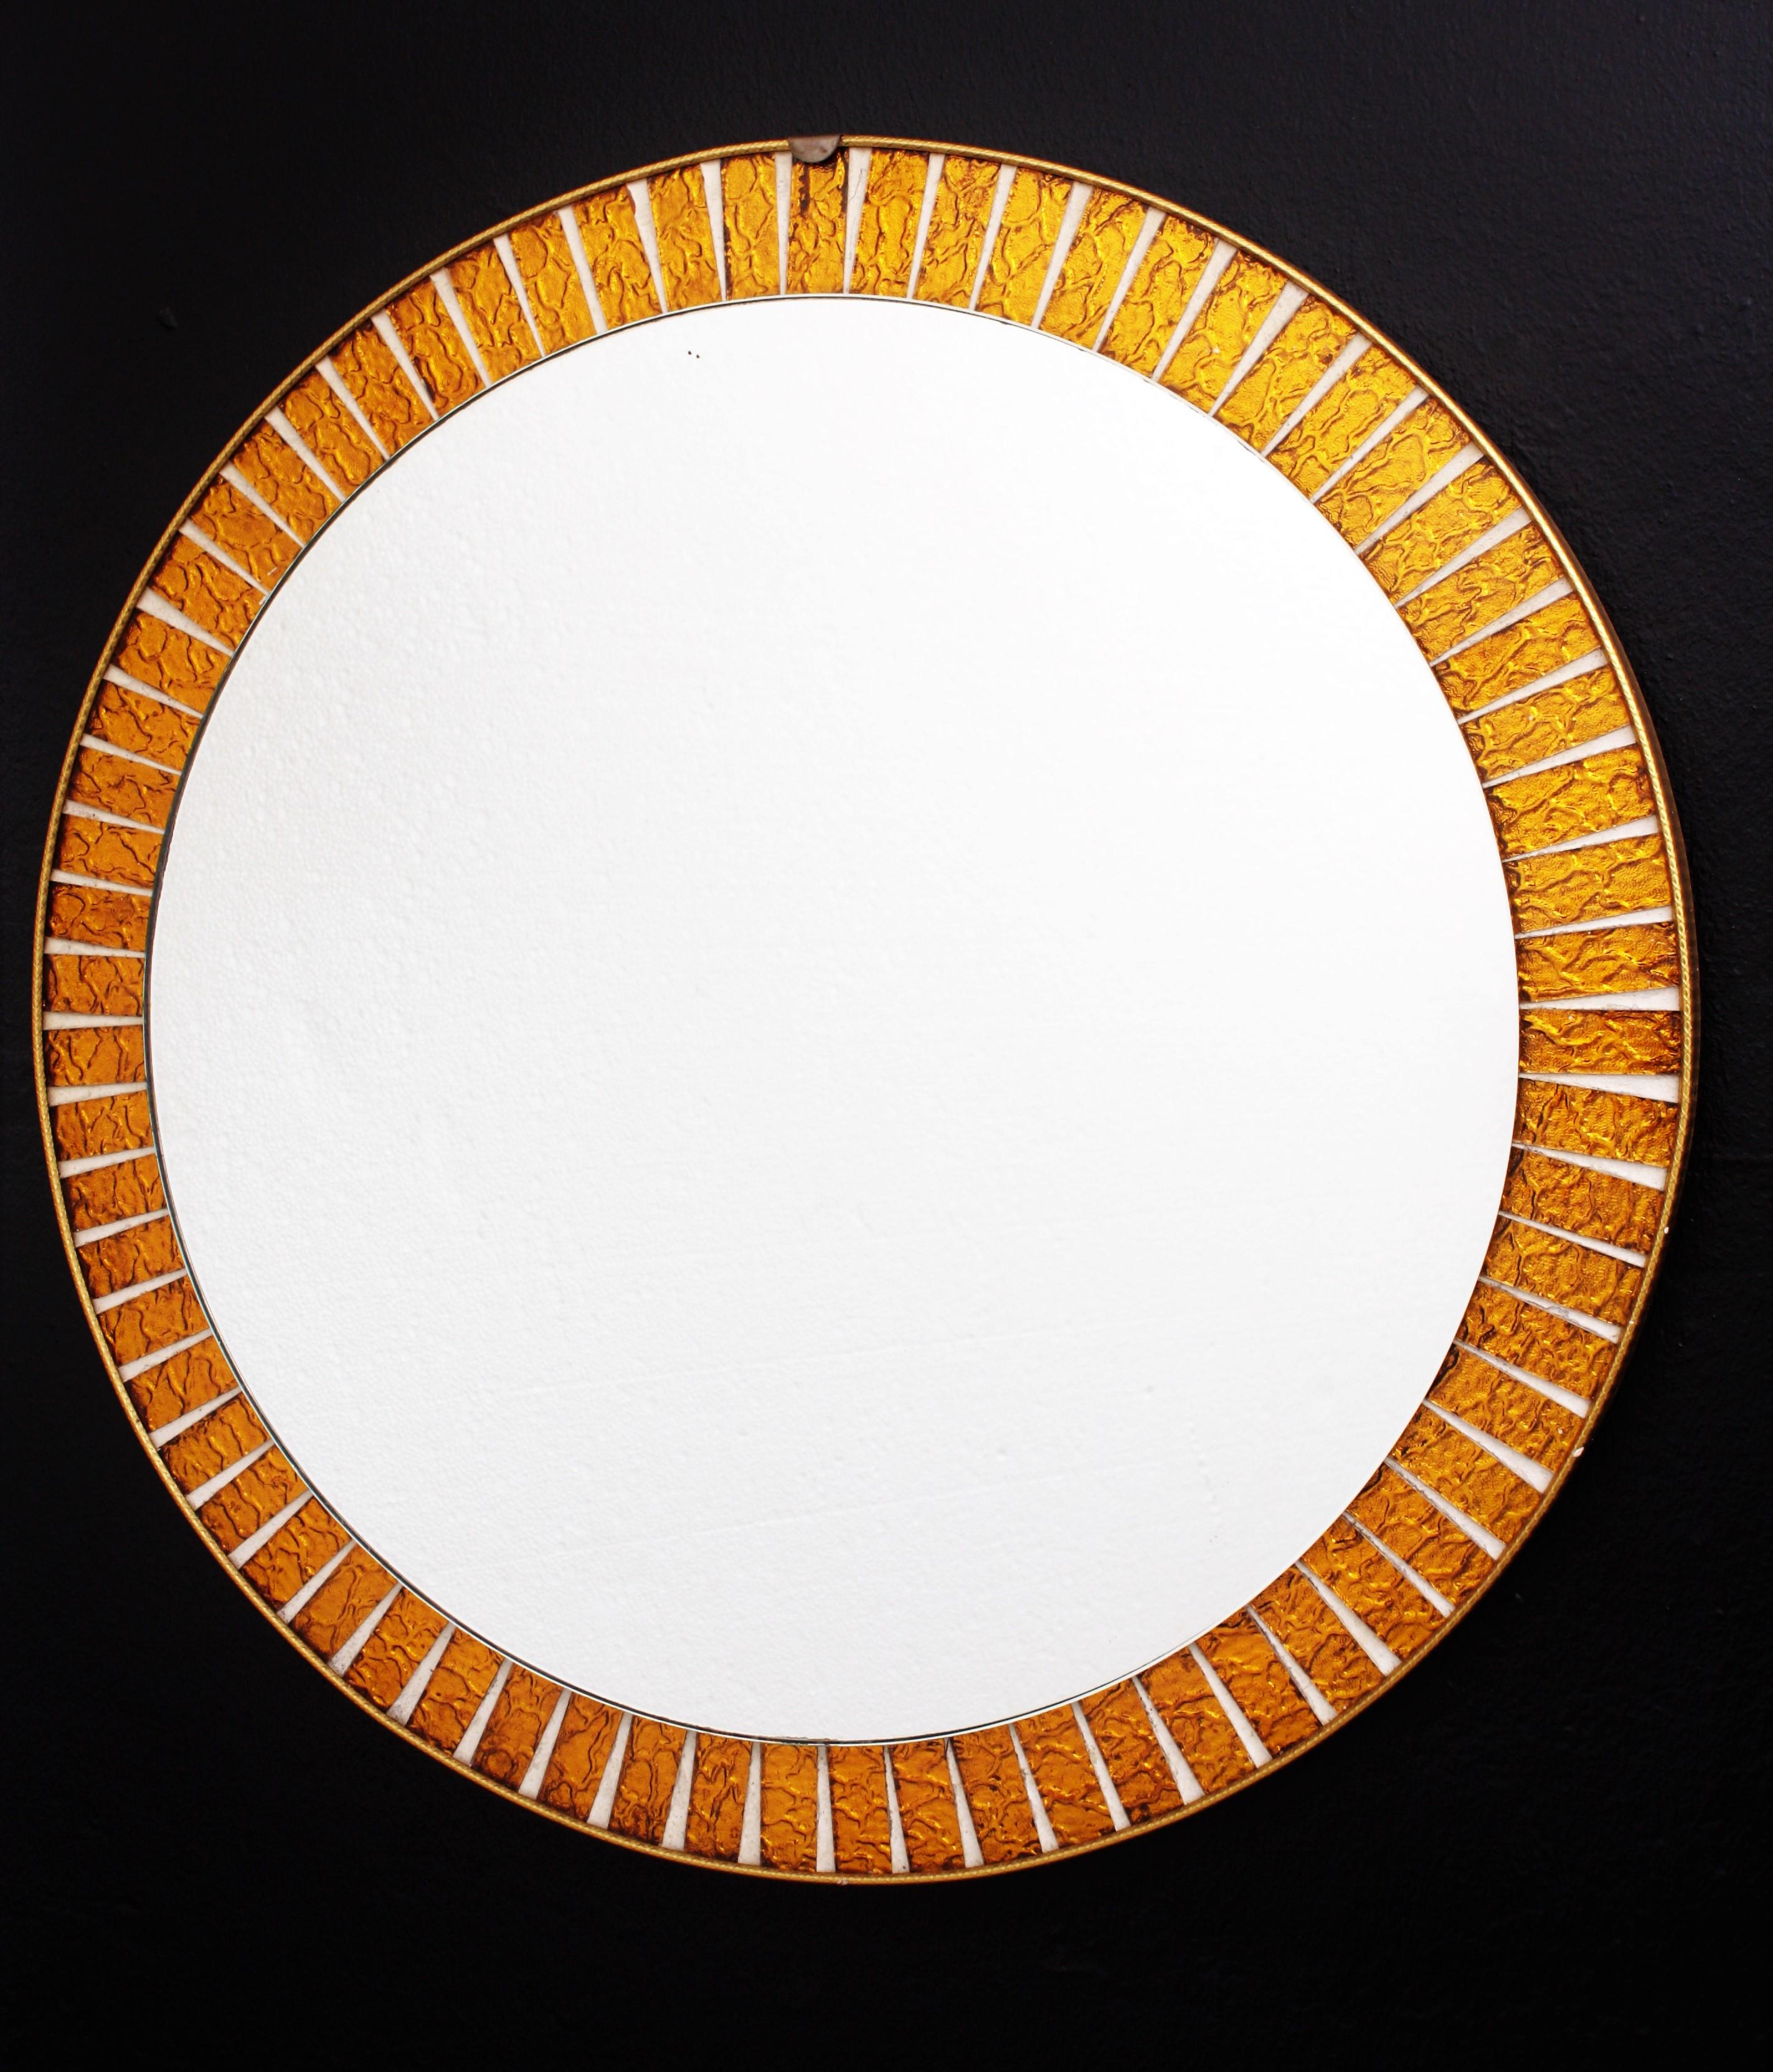 Miroir mural rond, moderne et espagnol, encadré par des verres texturés orange irisé taillés à la main. Fabriqué en Espagne, années 1960.
Ce miroir mural coloré sera un choix judicieux pour ajouter une touche midcentury à votre décoration